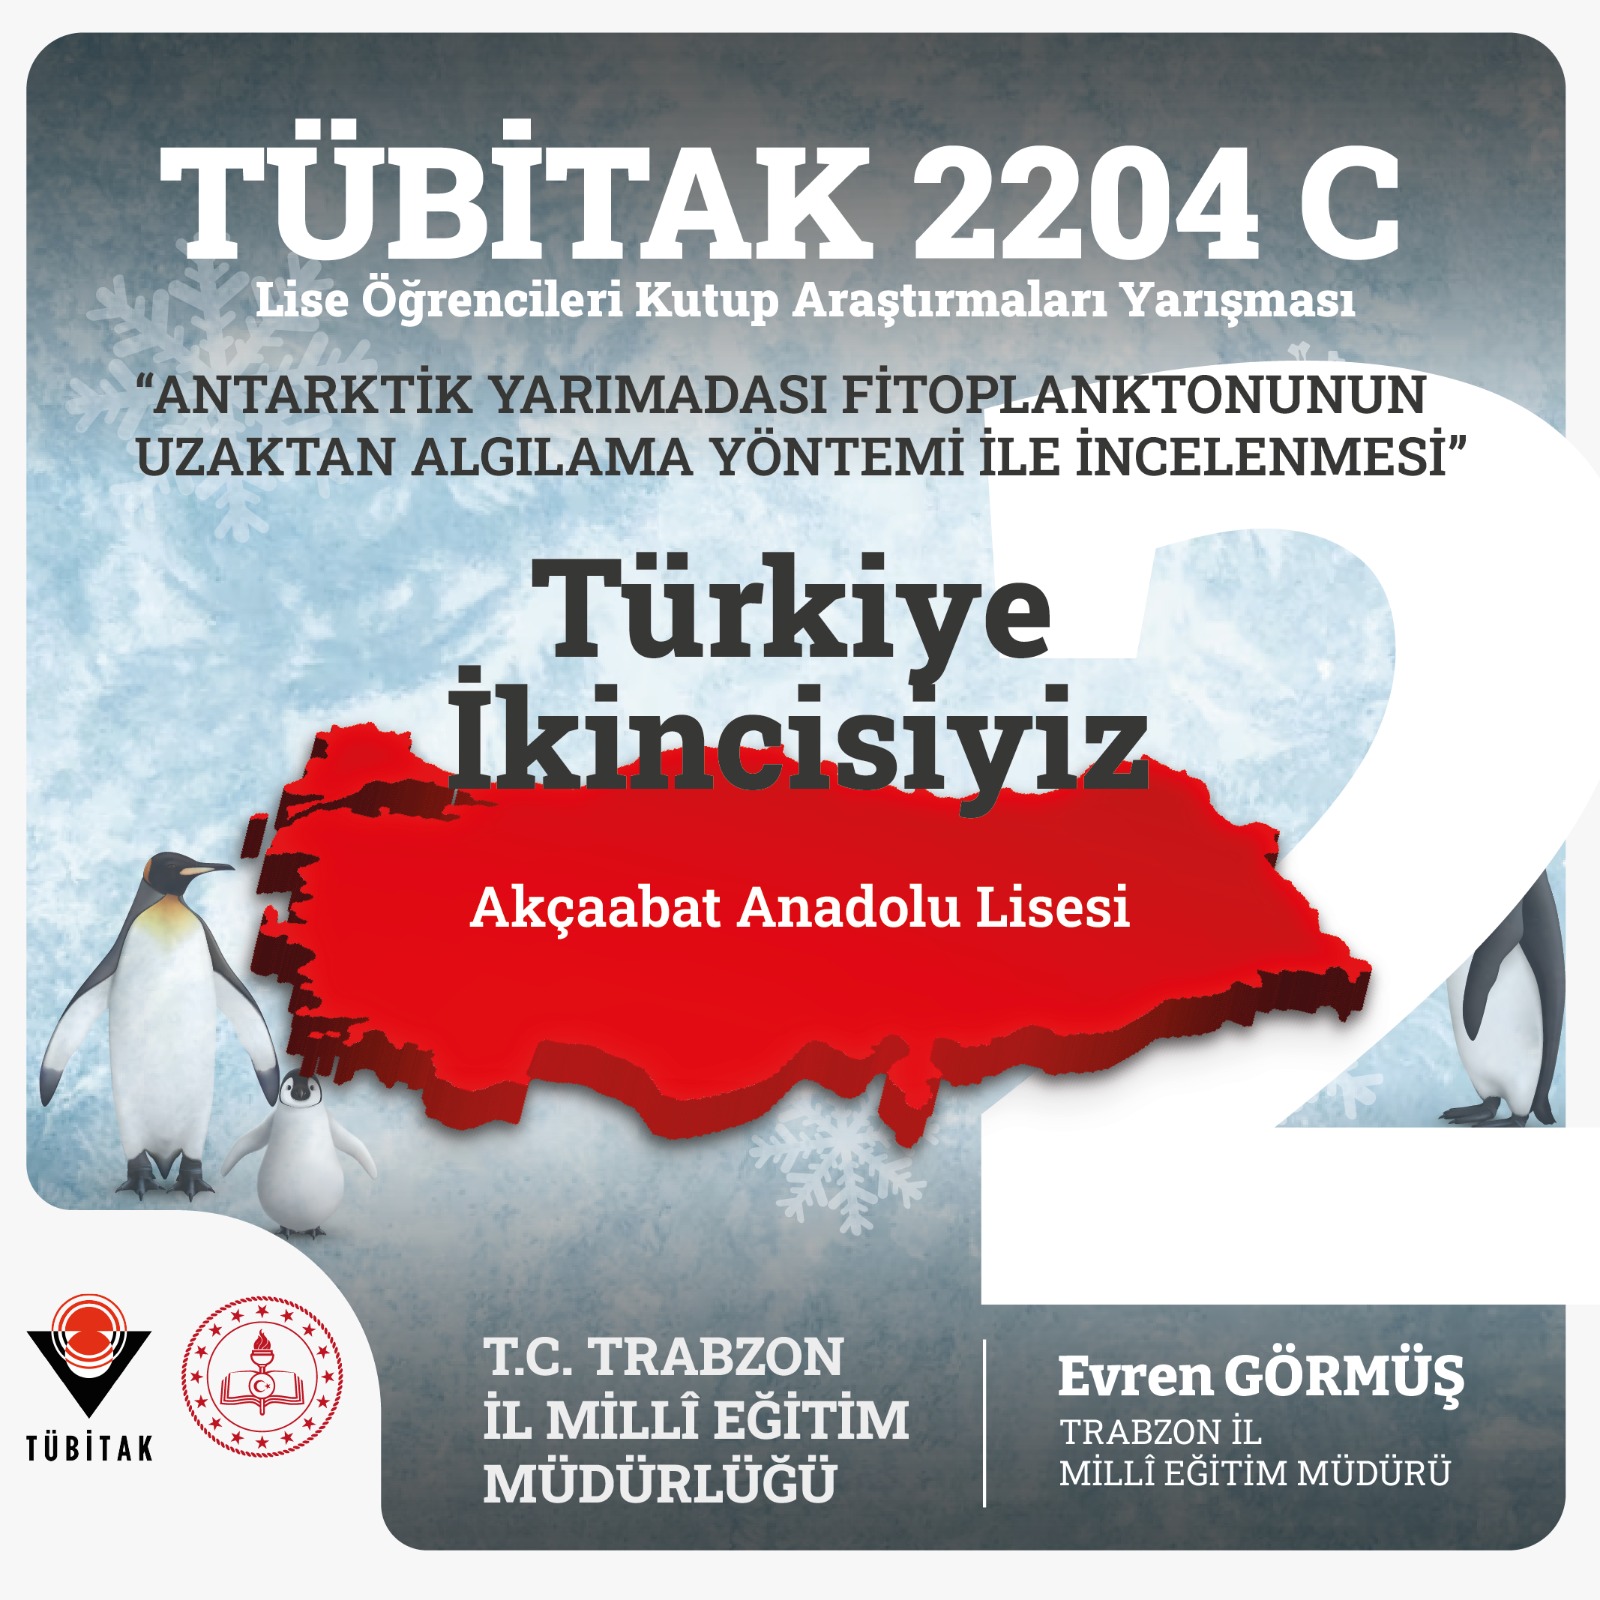 Trabzon'da öğrenciler başarıya imza attı! TÜBİTAK'ta Türkiye ikinciliği